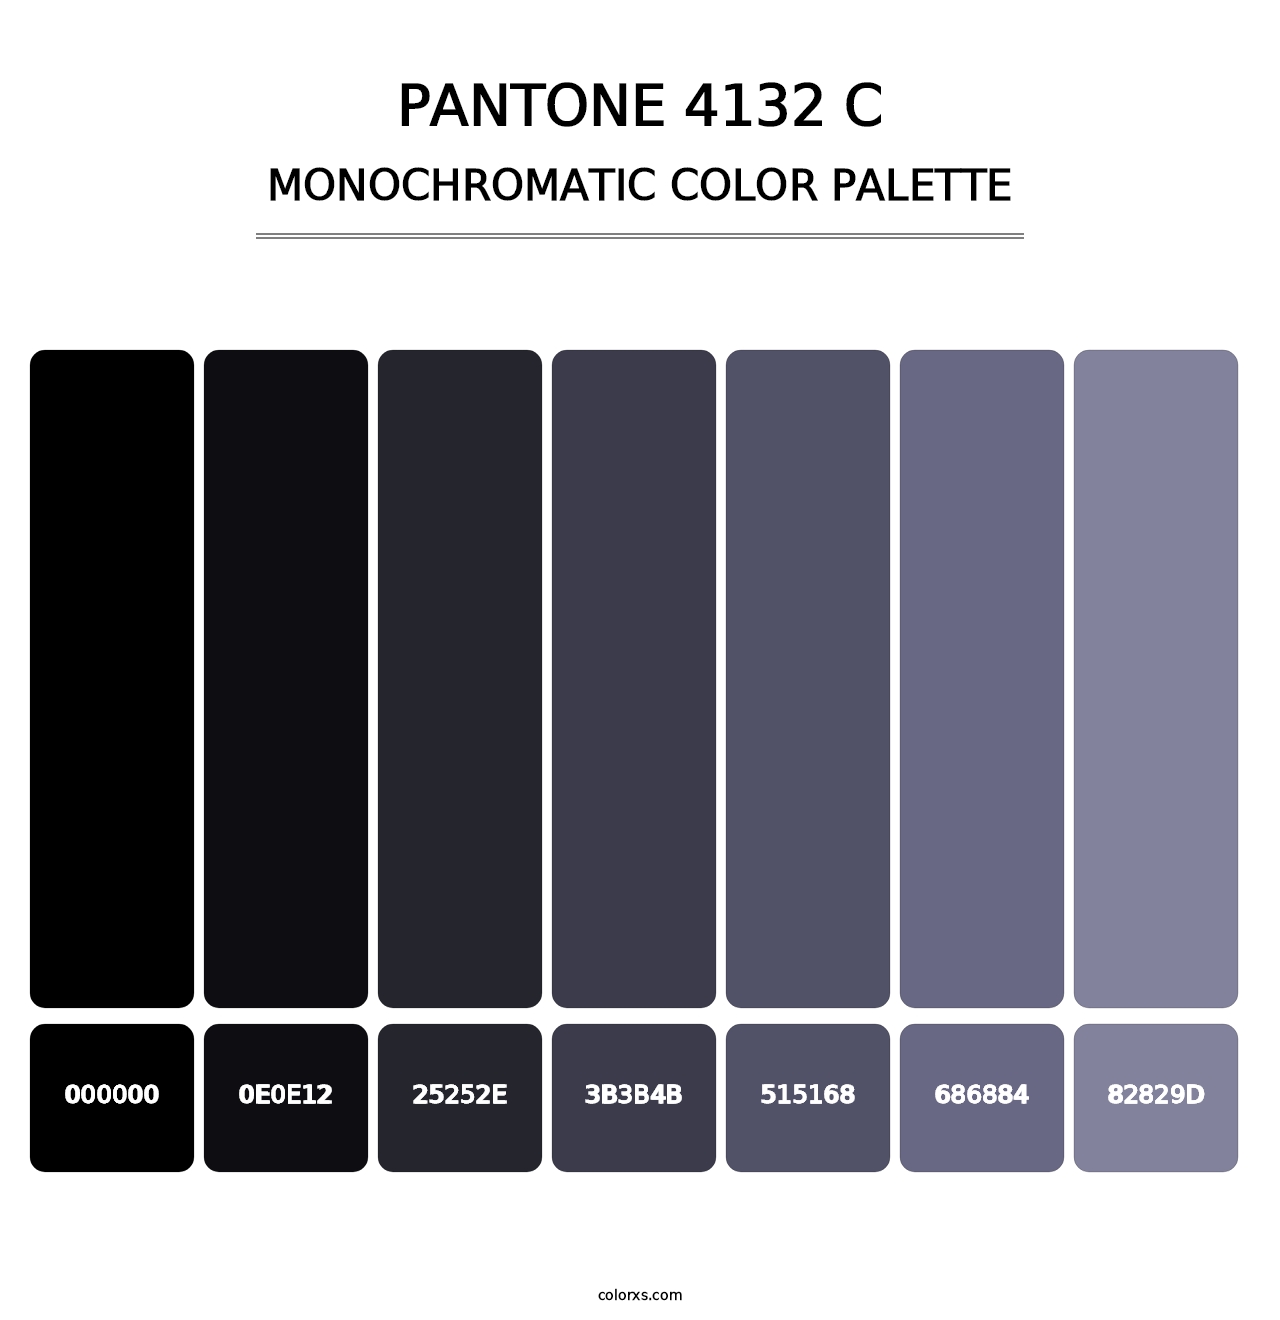 PANTONE 4132 C - Monochromatic Color Palette